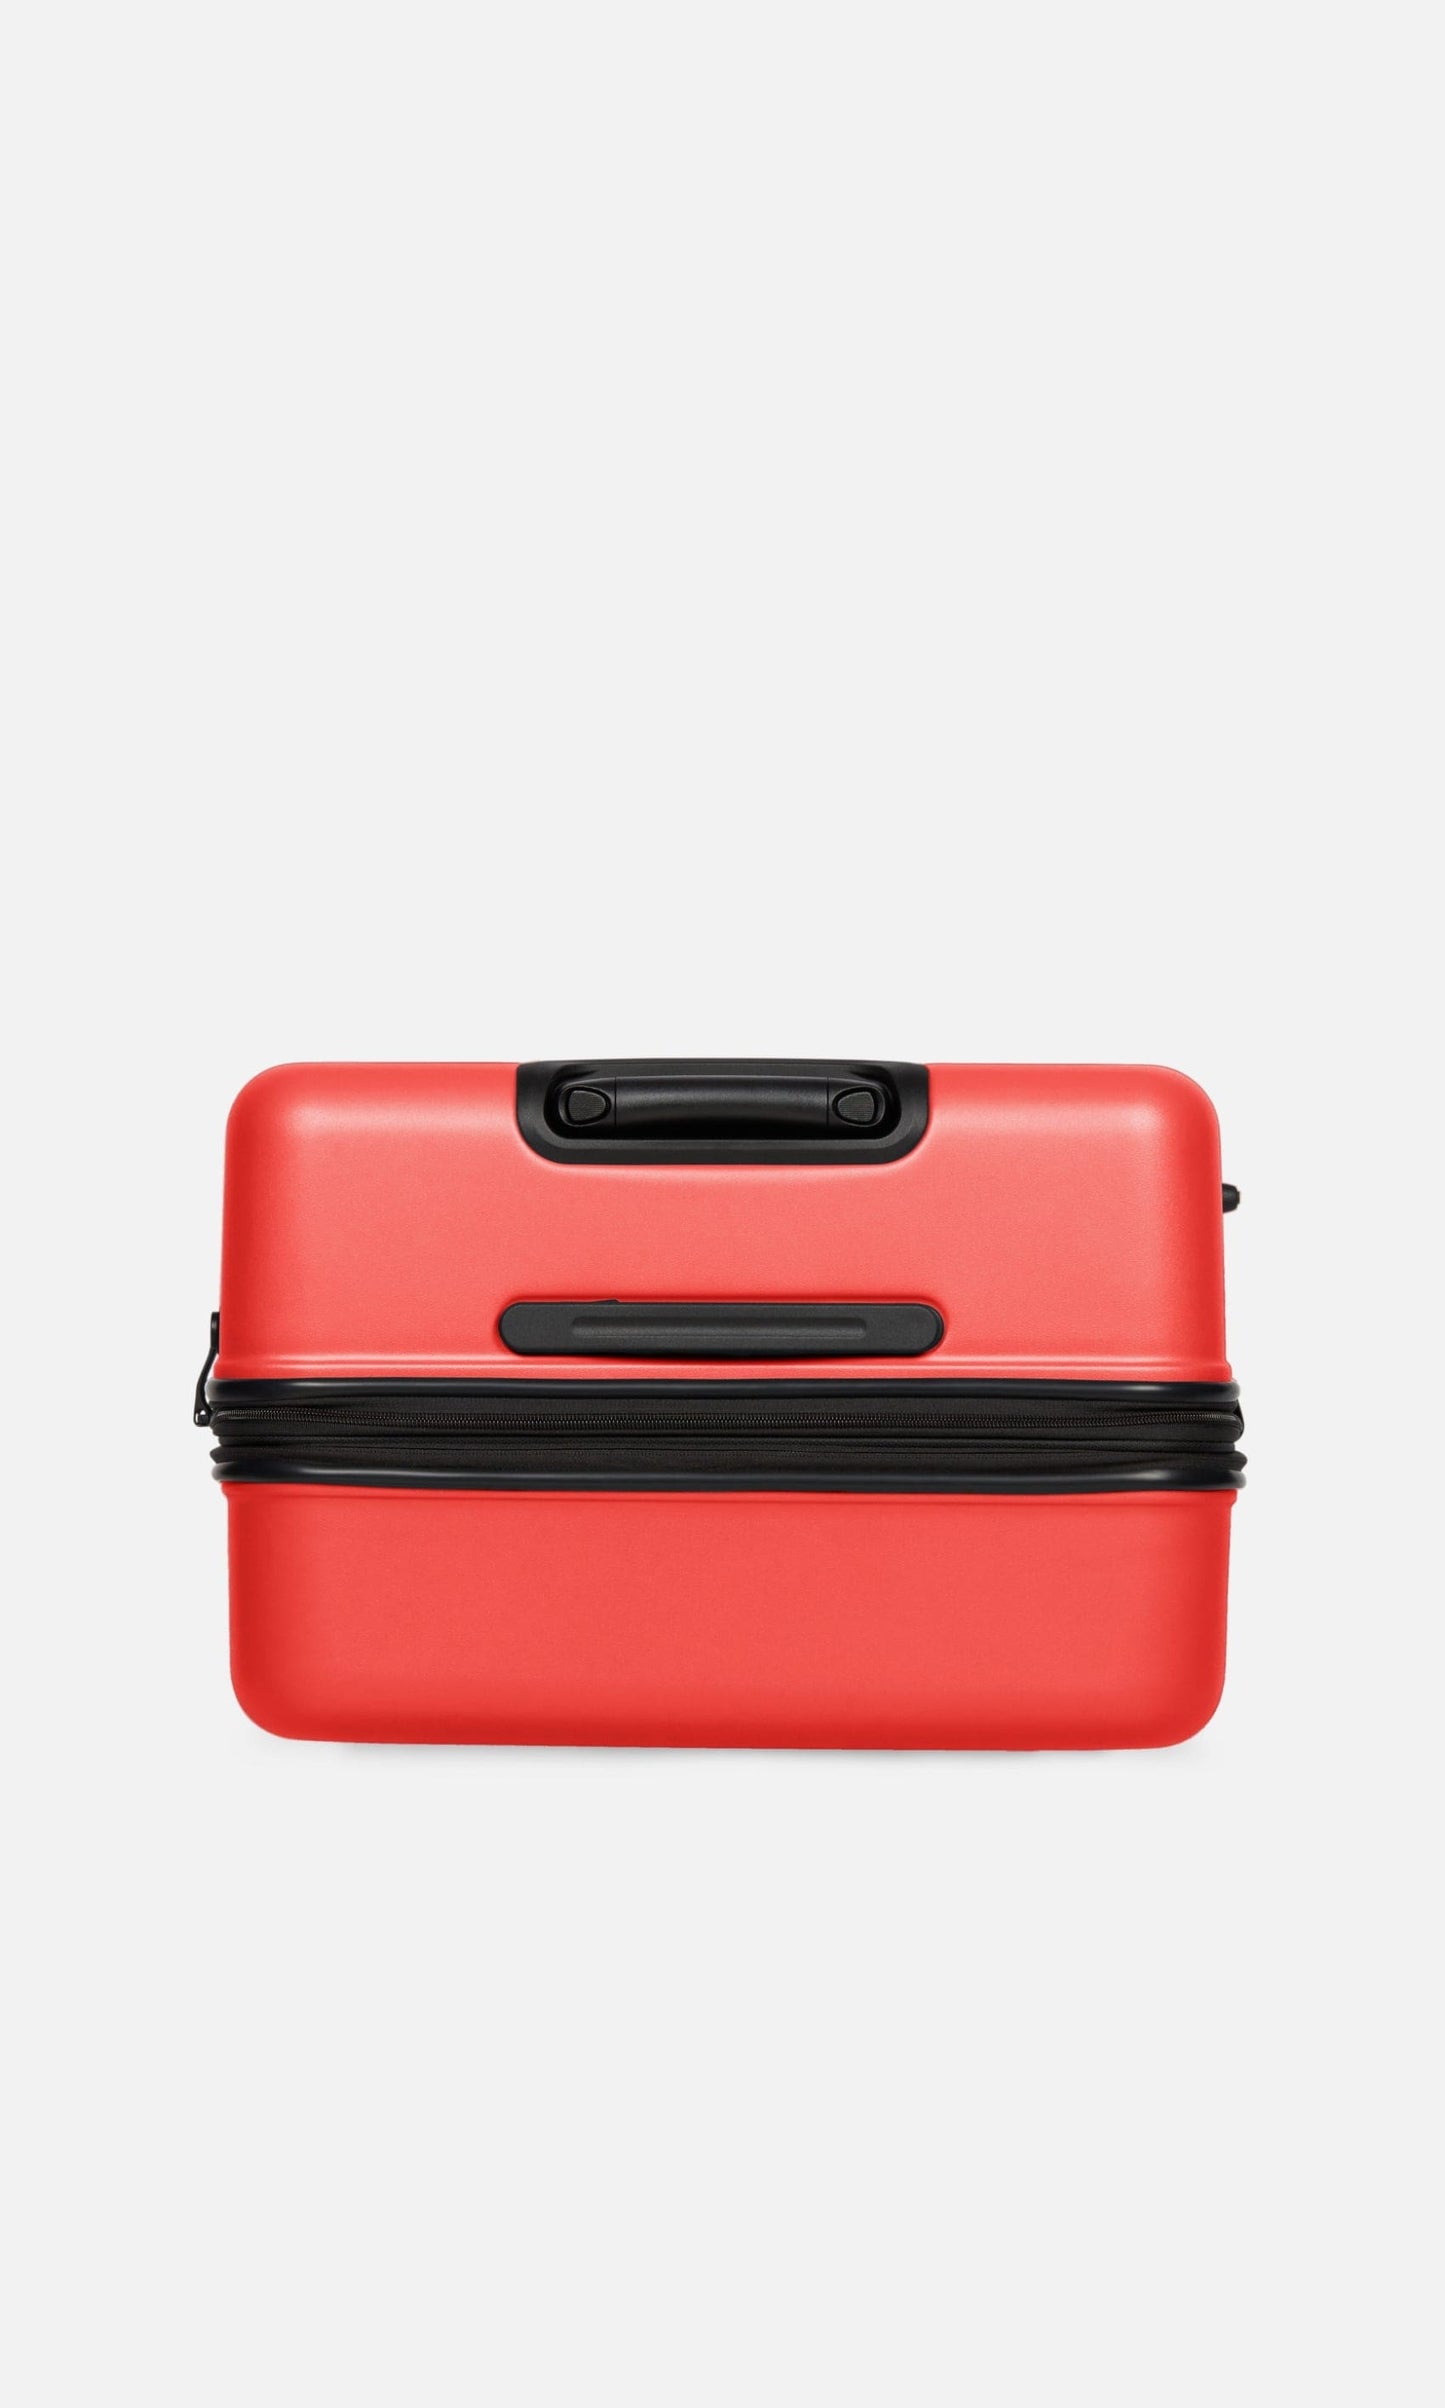 Antler Luggage -  Clifton large in coral - Hard Suitcases Clifton Large Suitcase Coral (Red) | Hard Suitcase | Antler UK